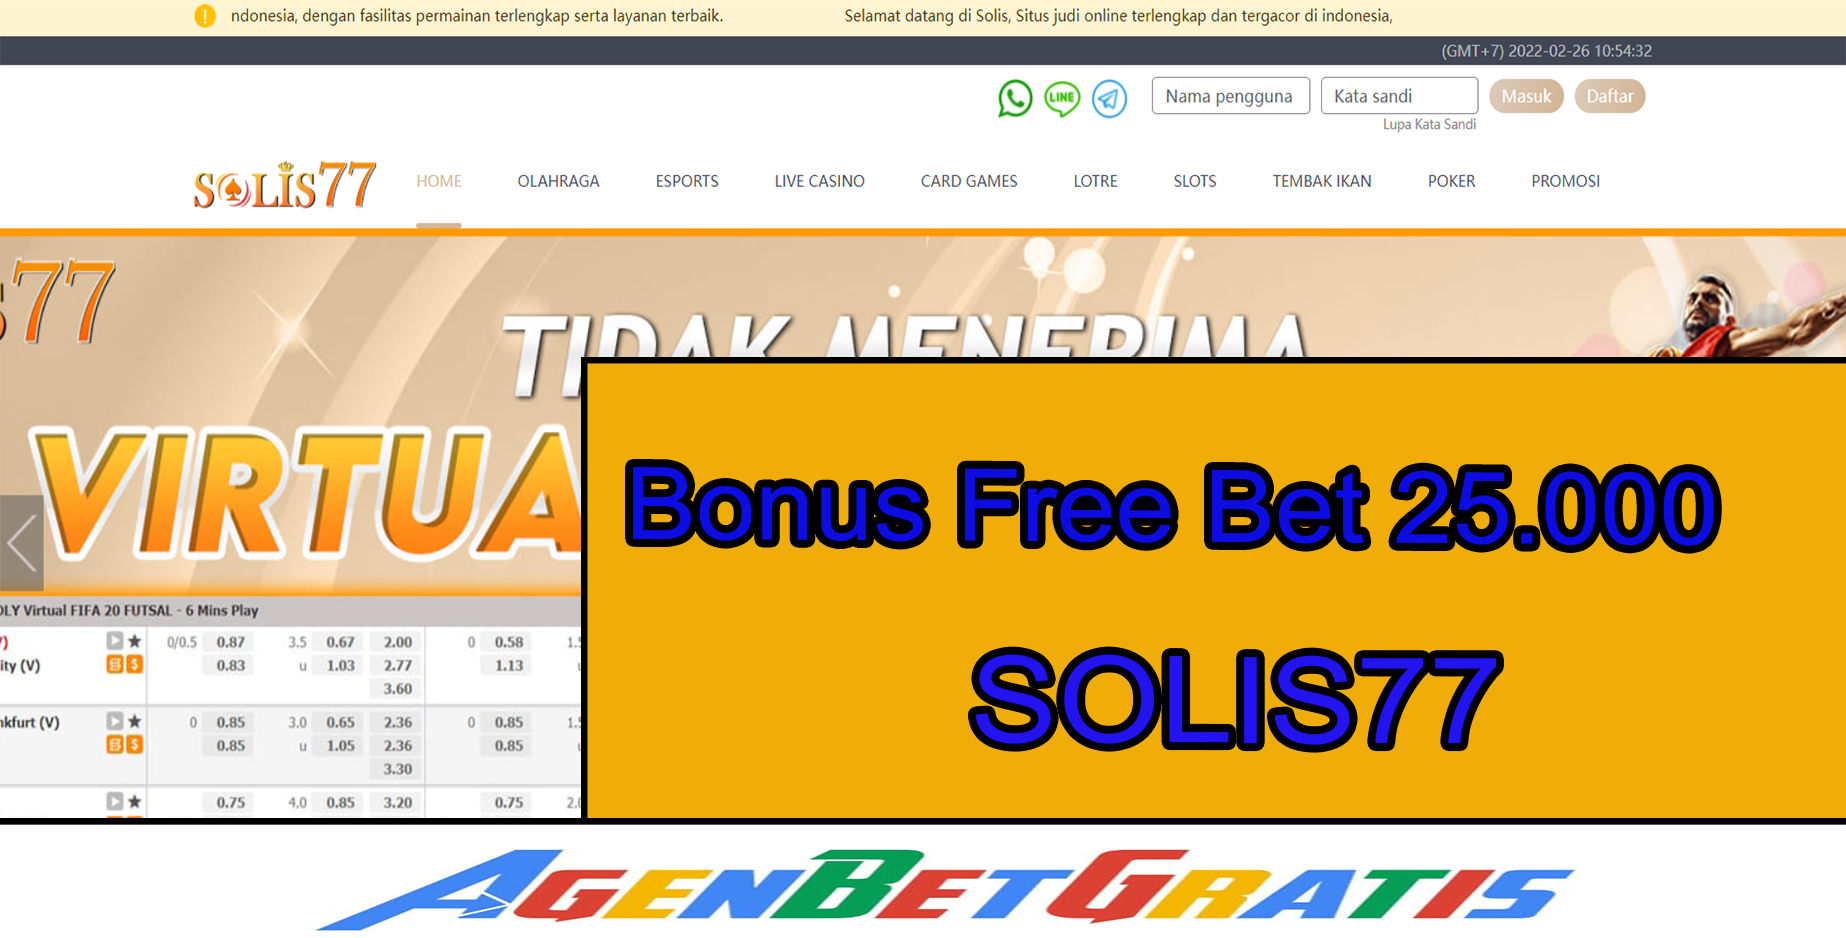 SOLIS77 - Bonus FreeBet 25.000